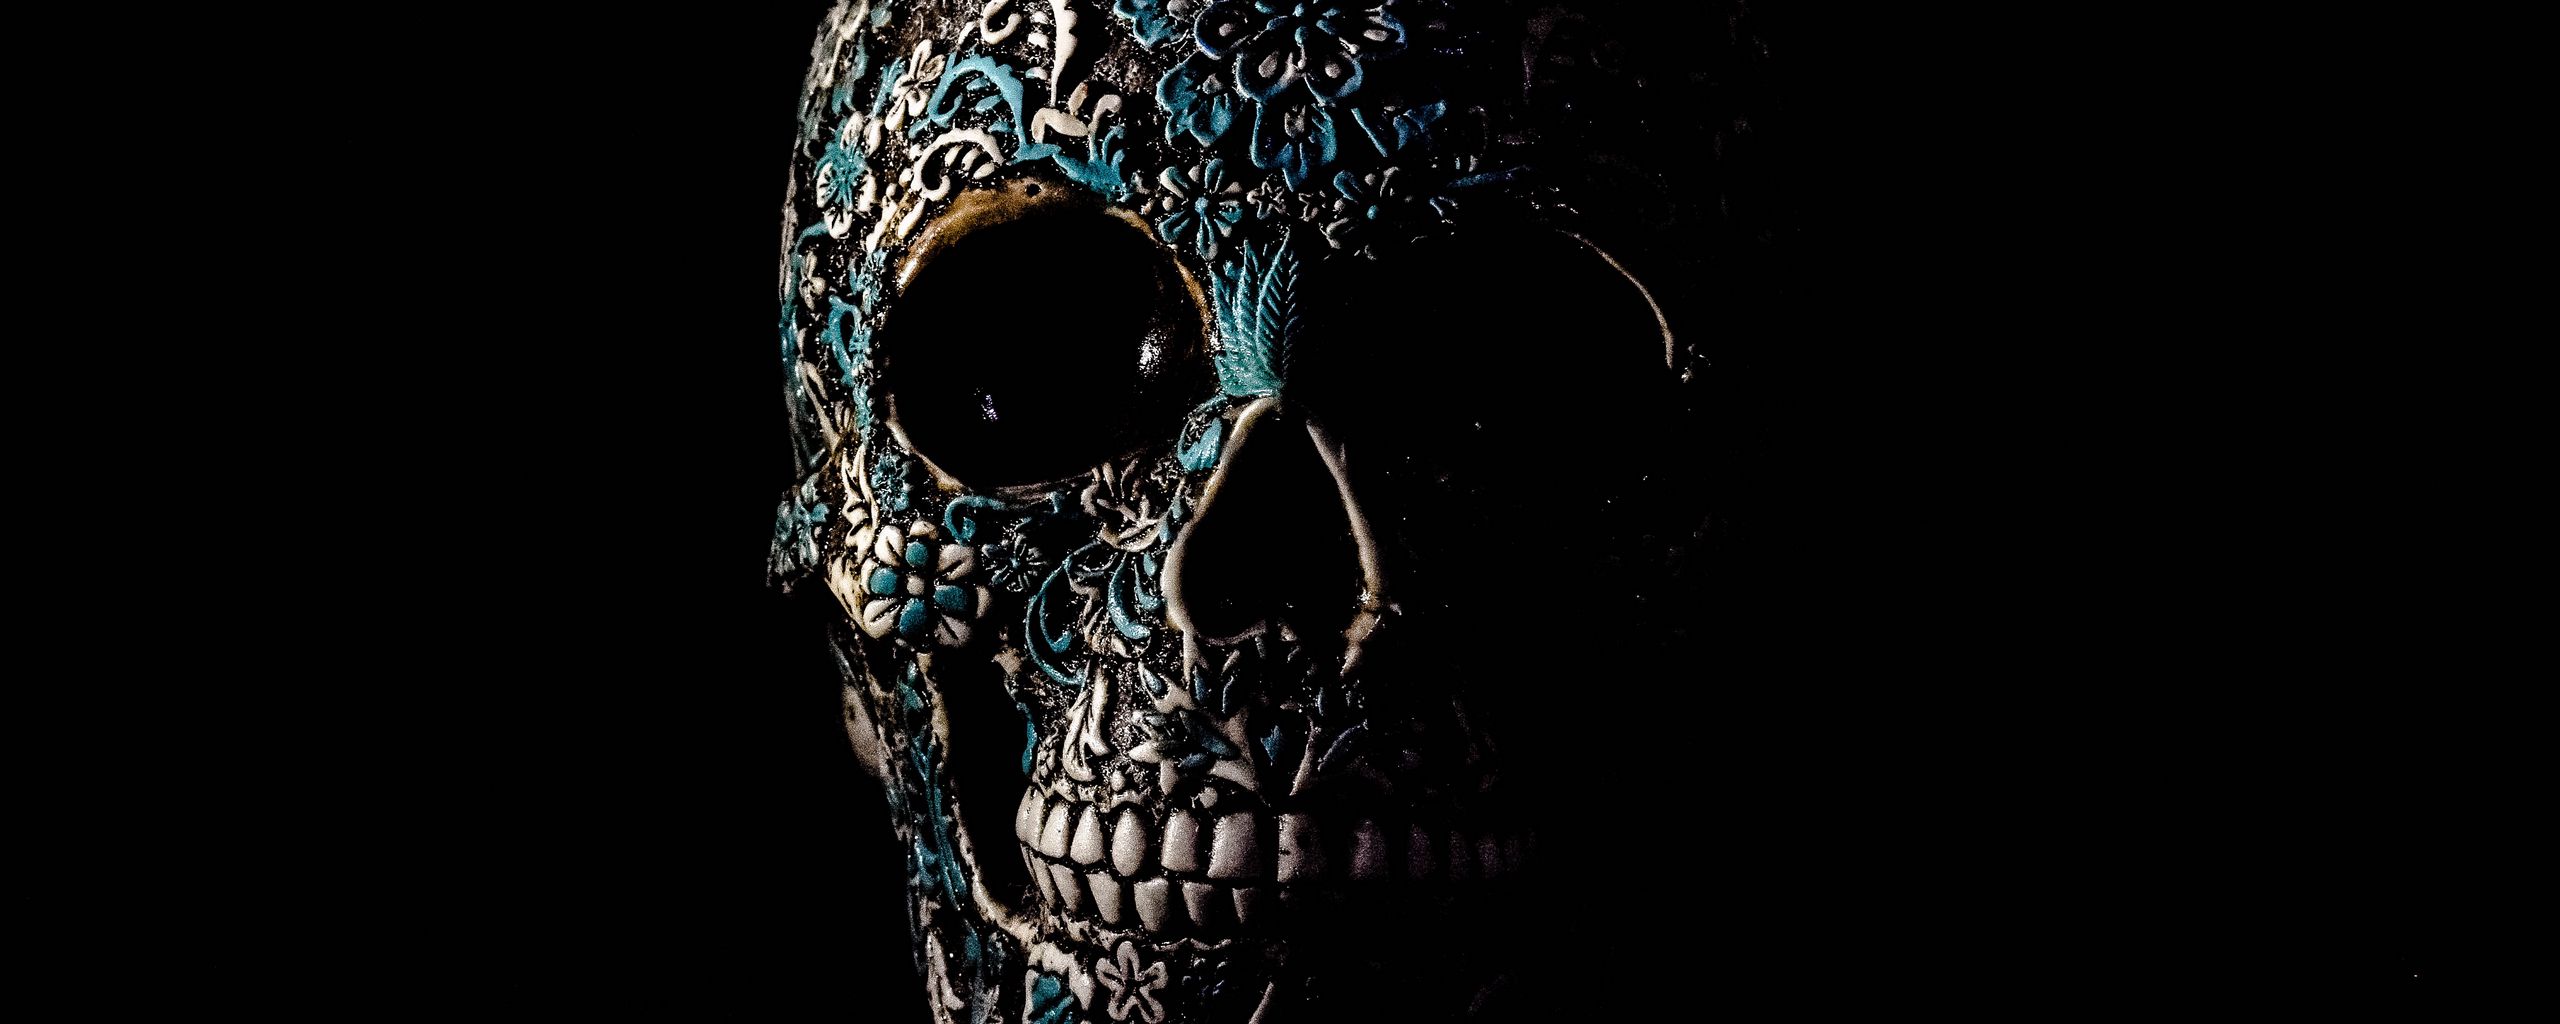 2560x1024 Wallpaper skull, dark, patterns, bones